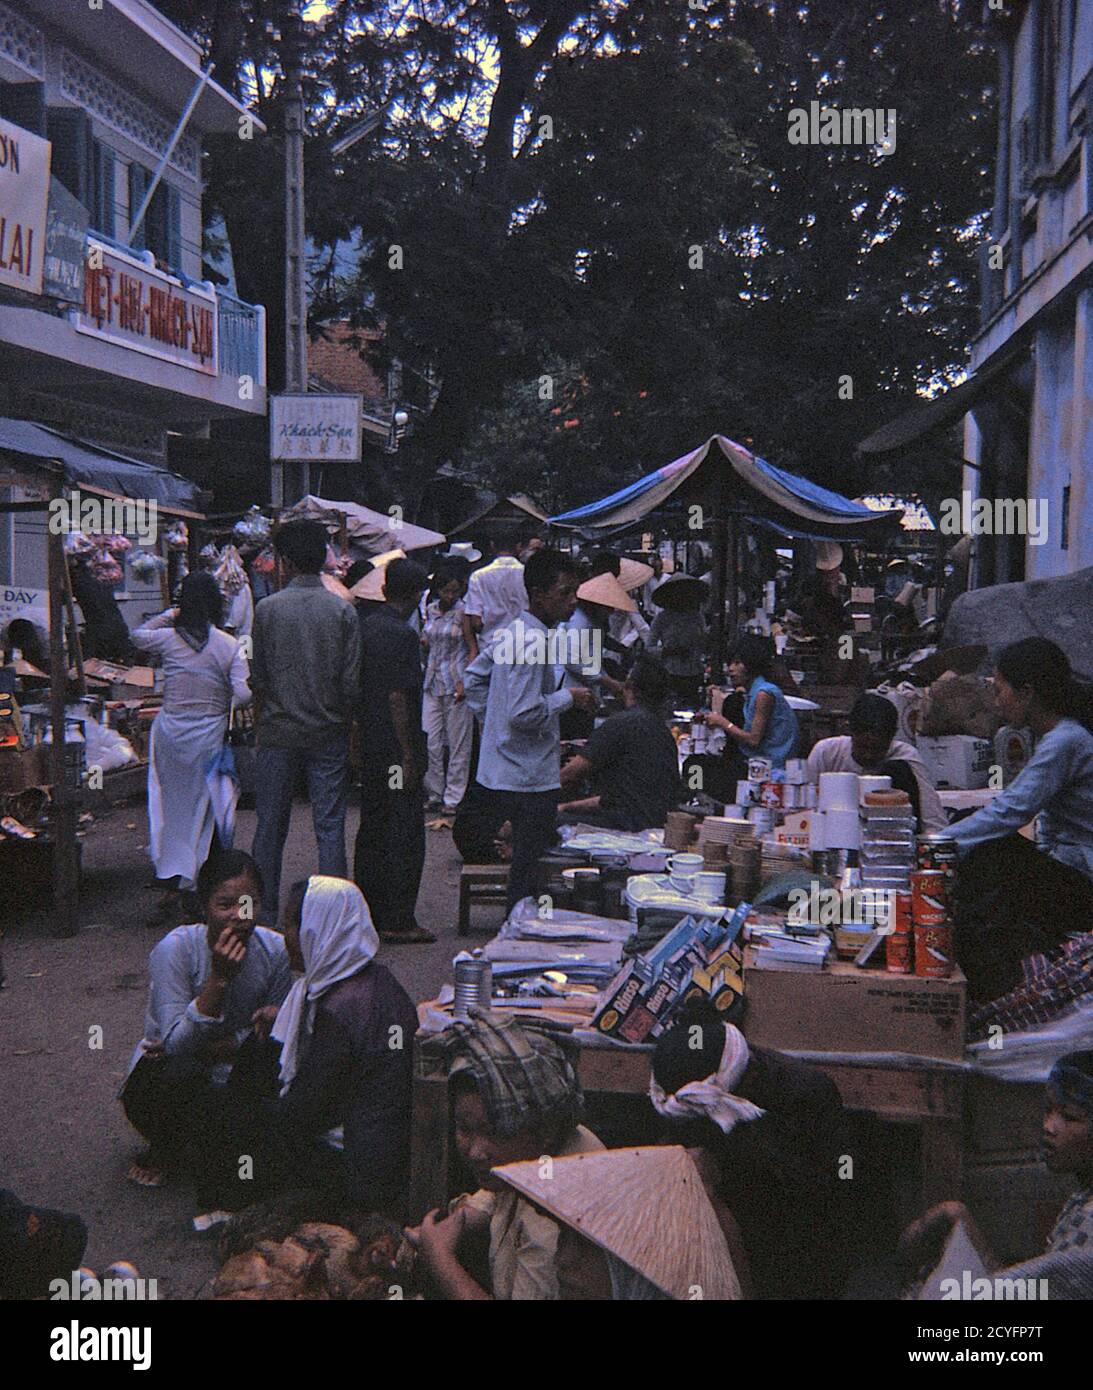 USA Vietnam-Krieg / Vietnam War - Vung Tau Market Place Stock Photo